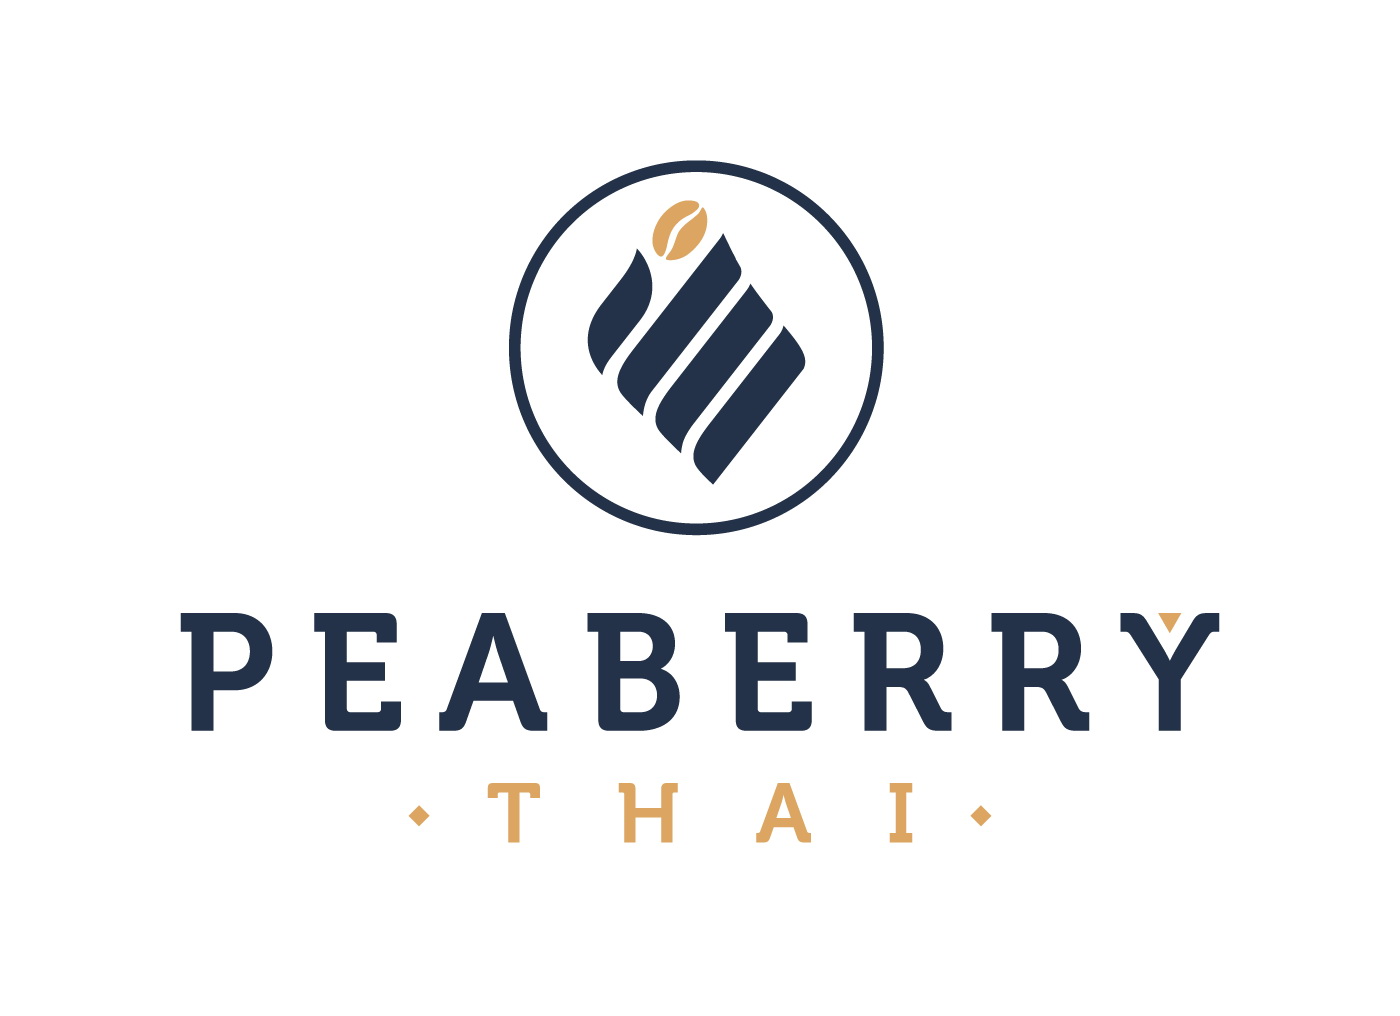 PEABERRY THAI